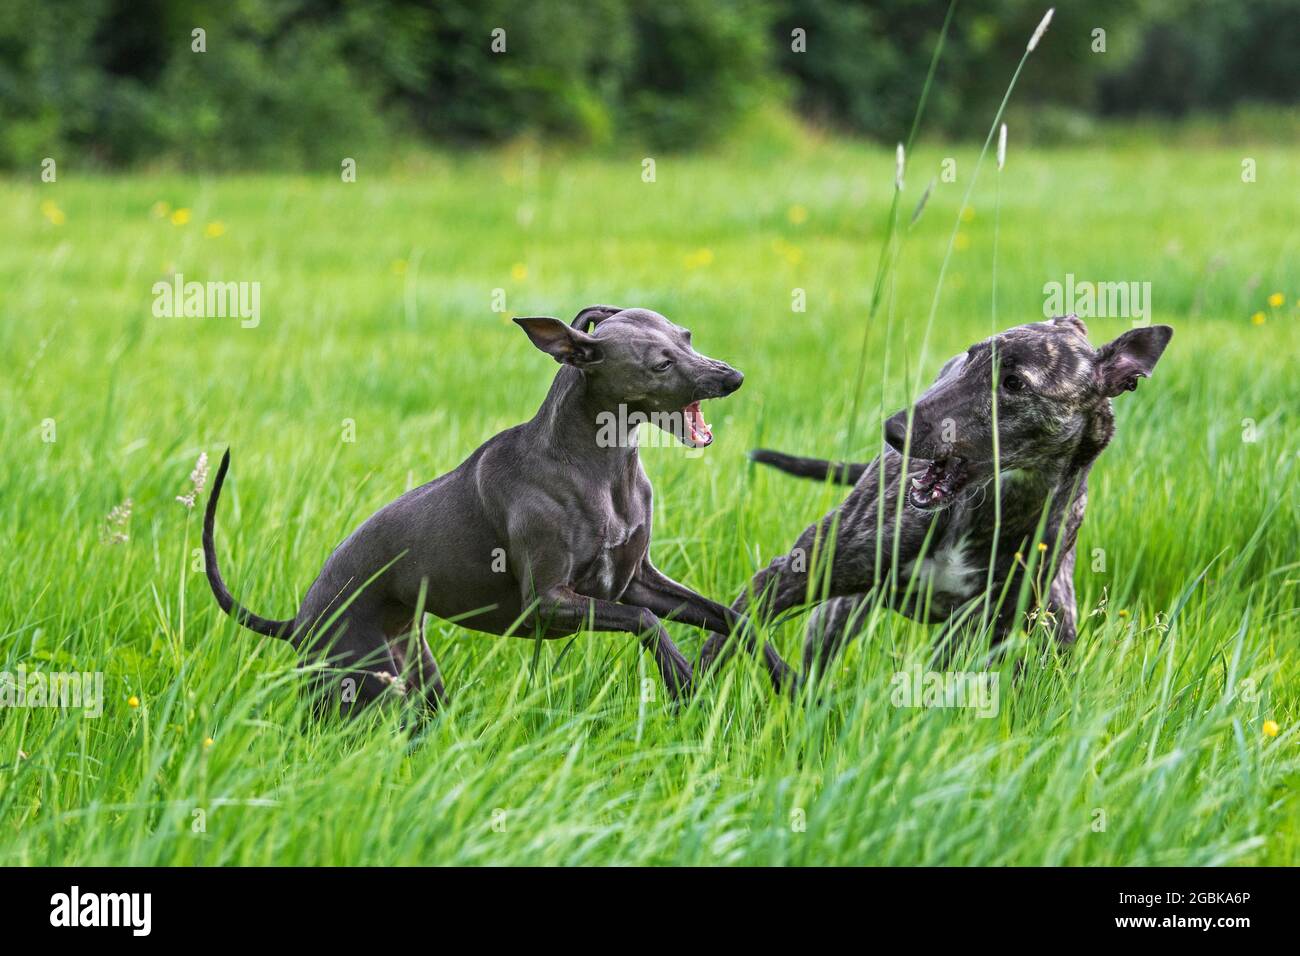 Galgo Español / barcino Spanish galgo / Spanish sighthound y Italian Greyhound / Piccolo levriero Italiano corriendo en el campo Foto de stock